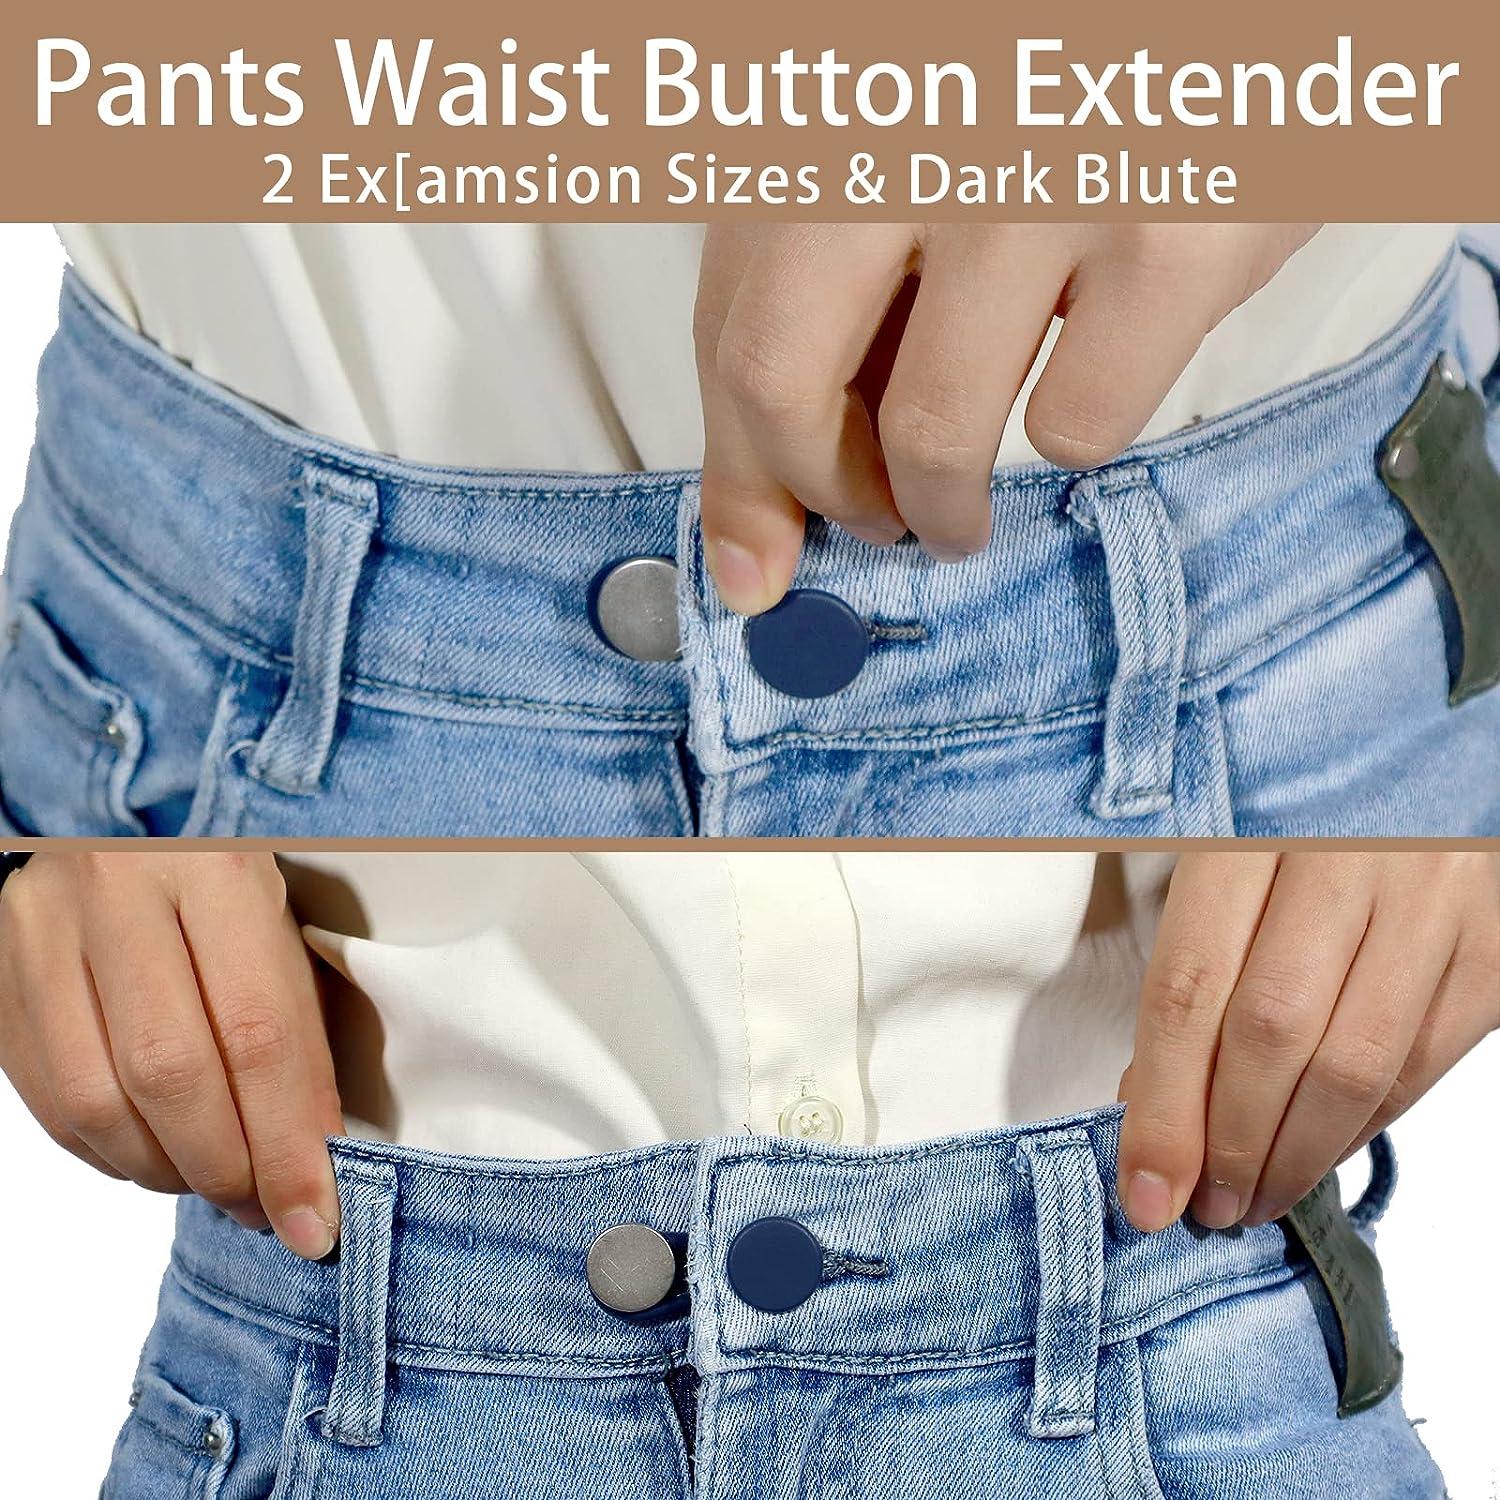 Pants Waist Button Extender: 12Pcs Button Extenders For Jeans - Women Men  Pants Waist Extenders - Pants Waist Extension 1/1.4 Inches - 3 Colors Pant Waistband  Expander